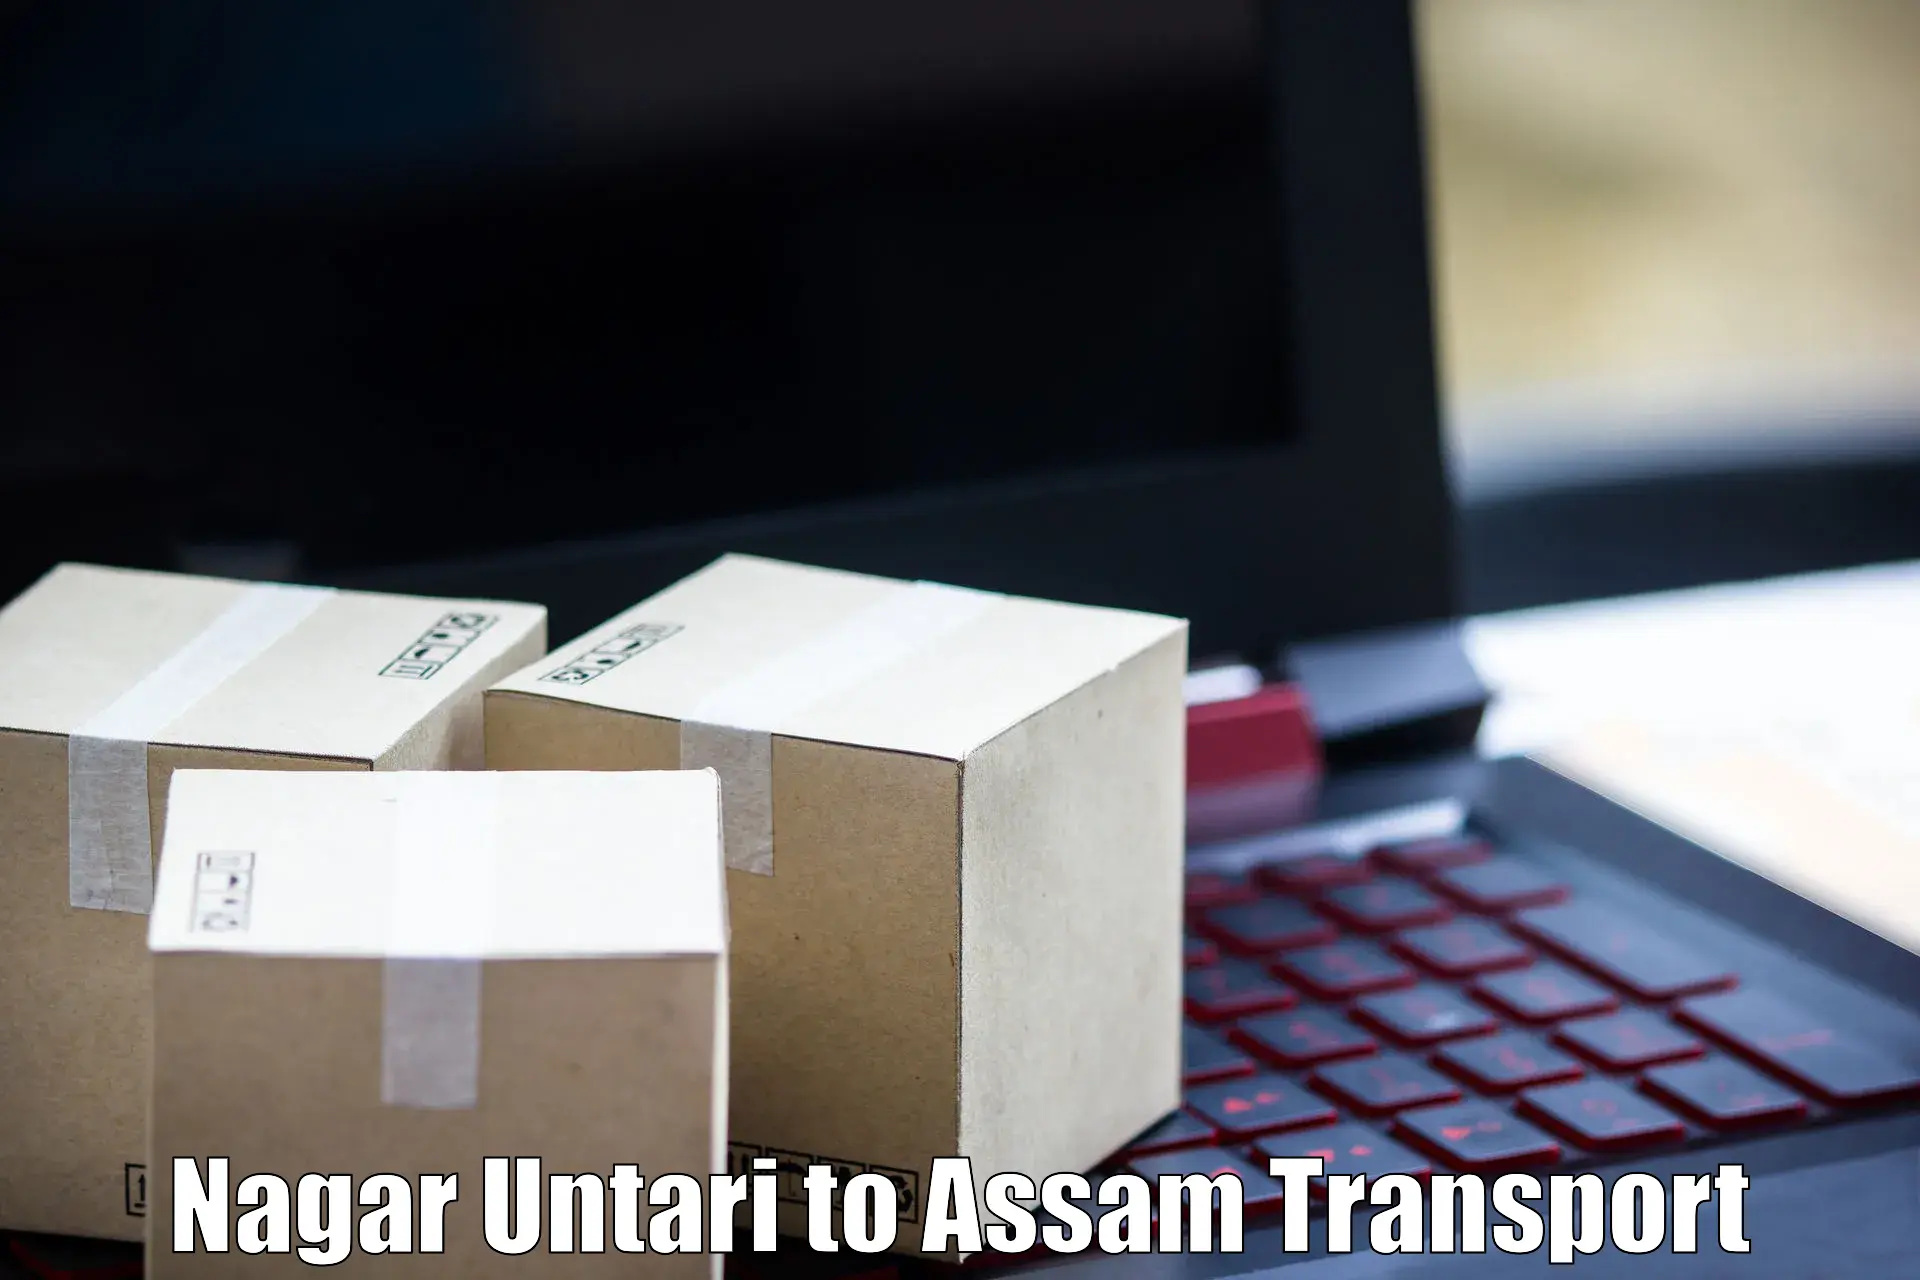 Cargo transportation services Nagar Untari to Karbi Anglong